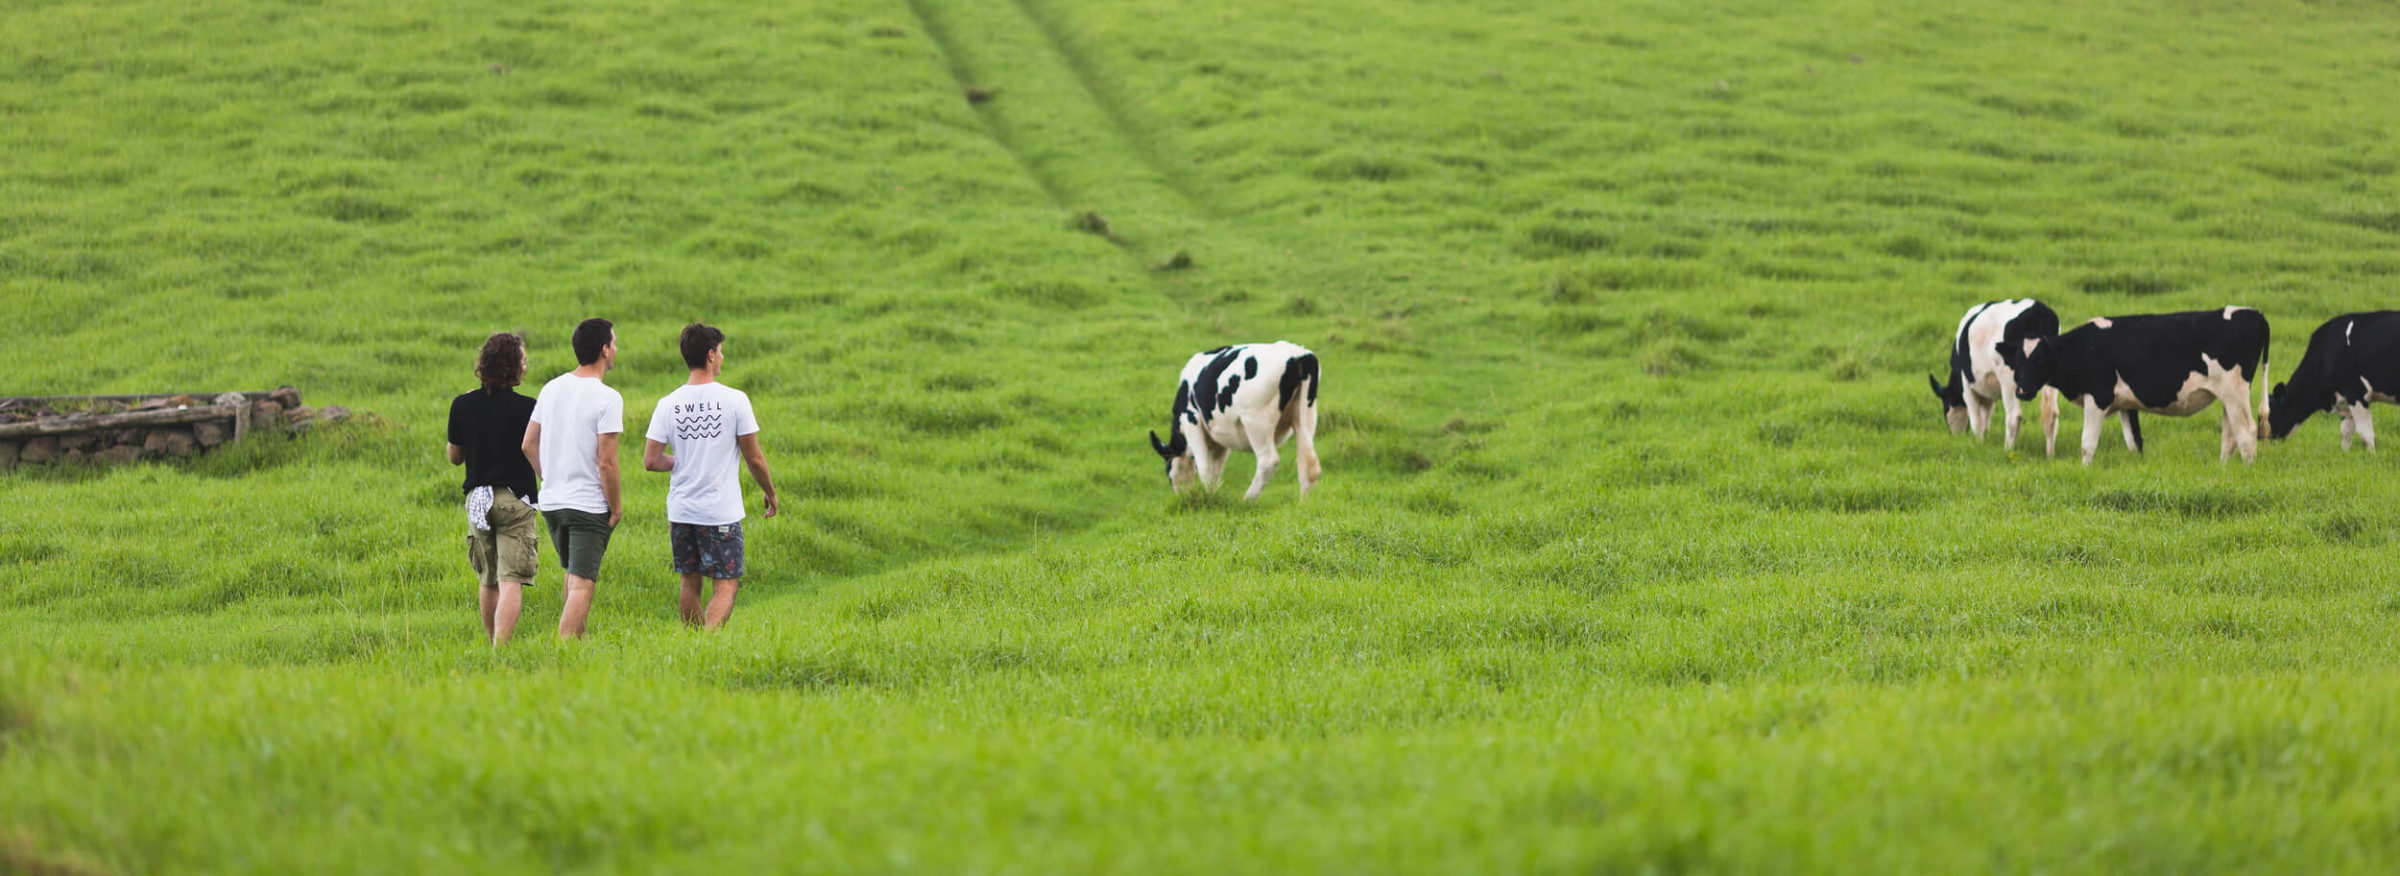 People walking in a cow field, Photography by Jon Harris